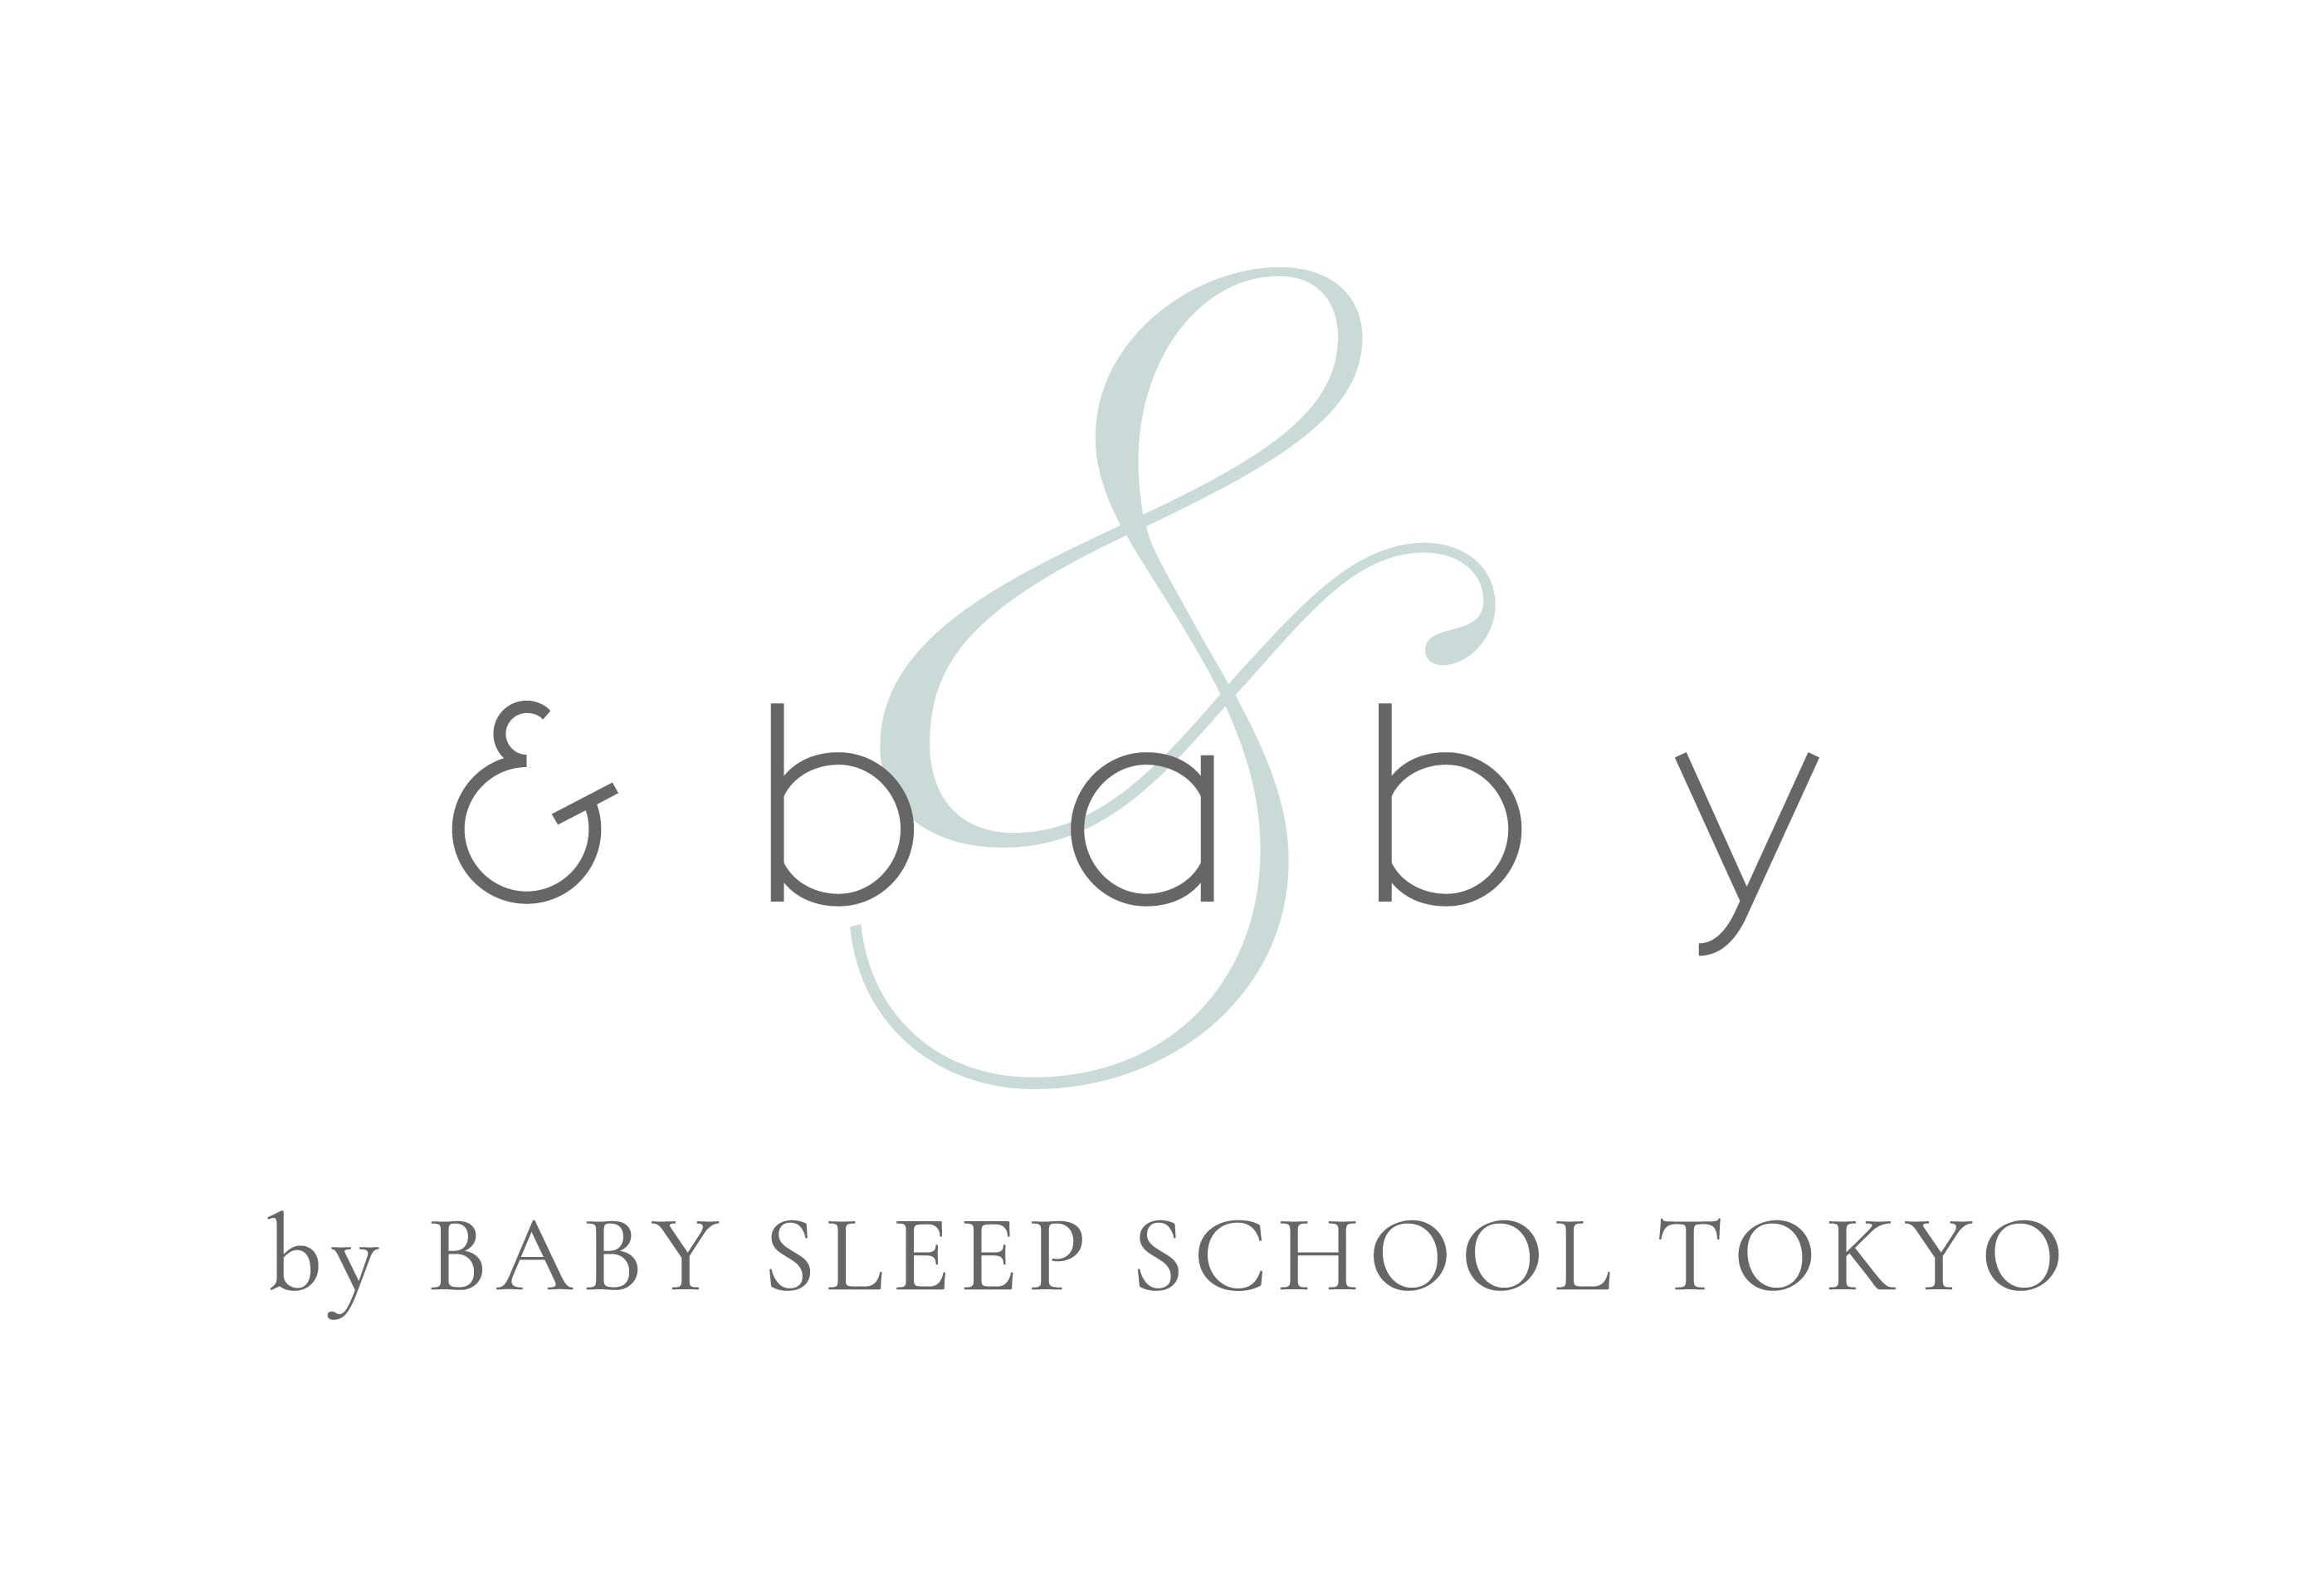 BABY SLEEP SCHOOL TOKYO